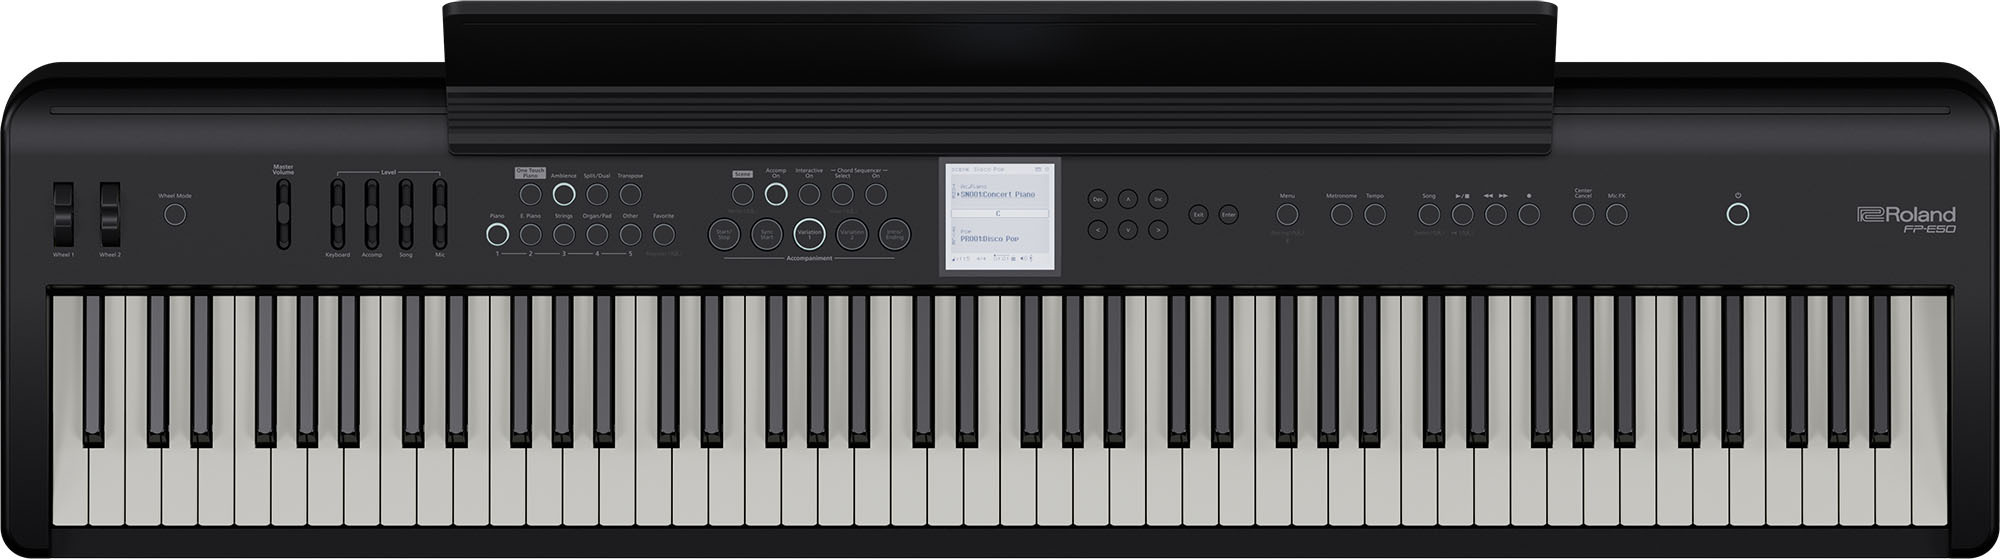 Roland Fp-e50 - Portable digital piano - Main picture